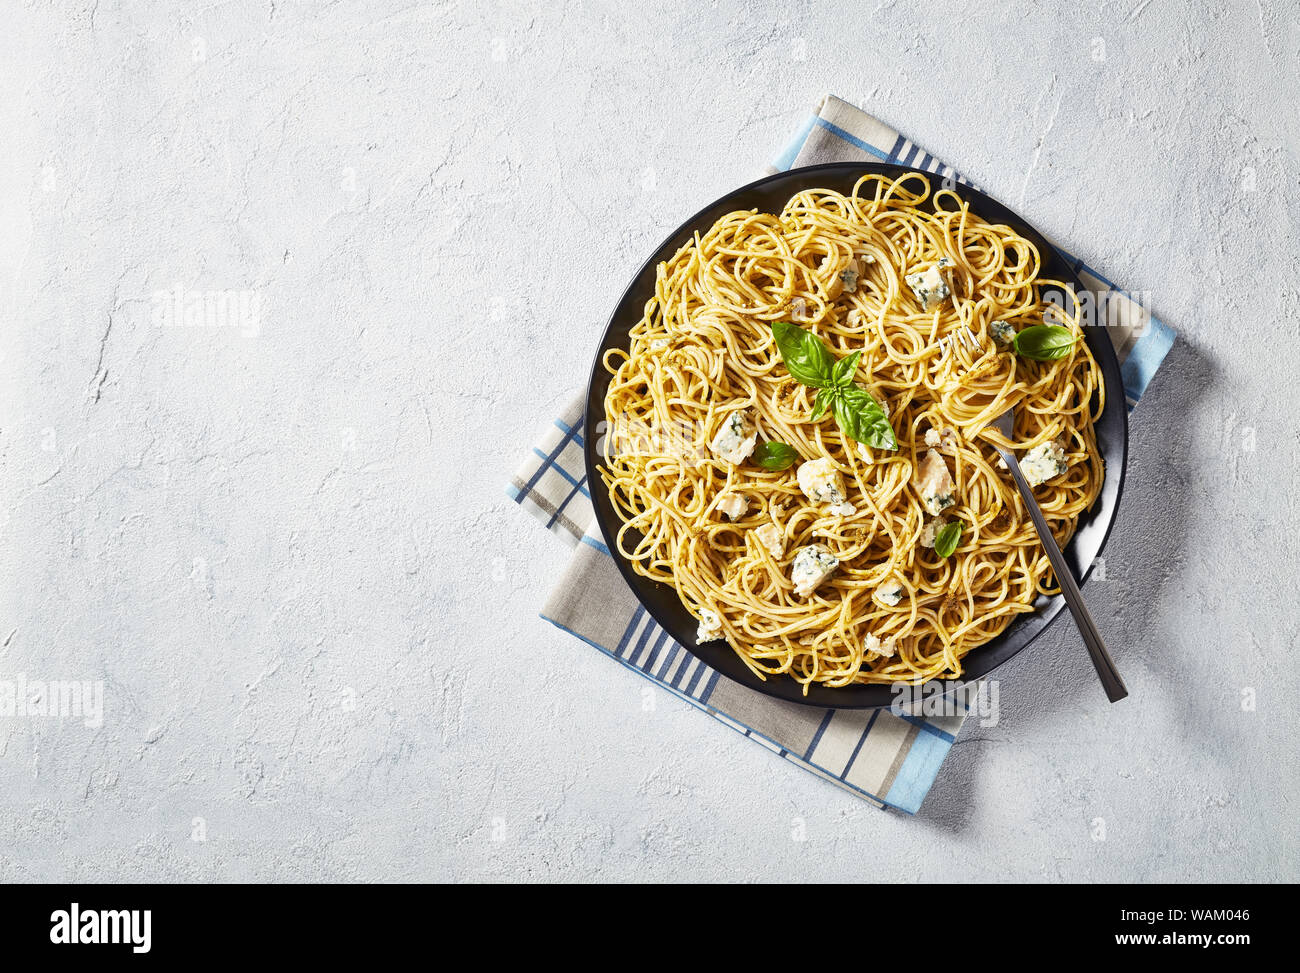 Vue de dessus de spaghetti au pesto de basilic genovese et le fromage bleu sur une plaque noire sur une table en béton blanc, vue de dessus, flatlay, close-up Banque D'Images